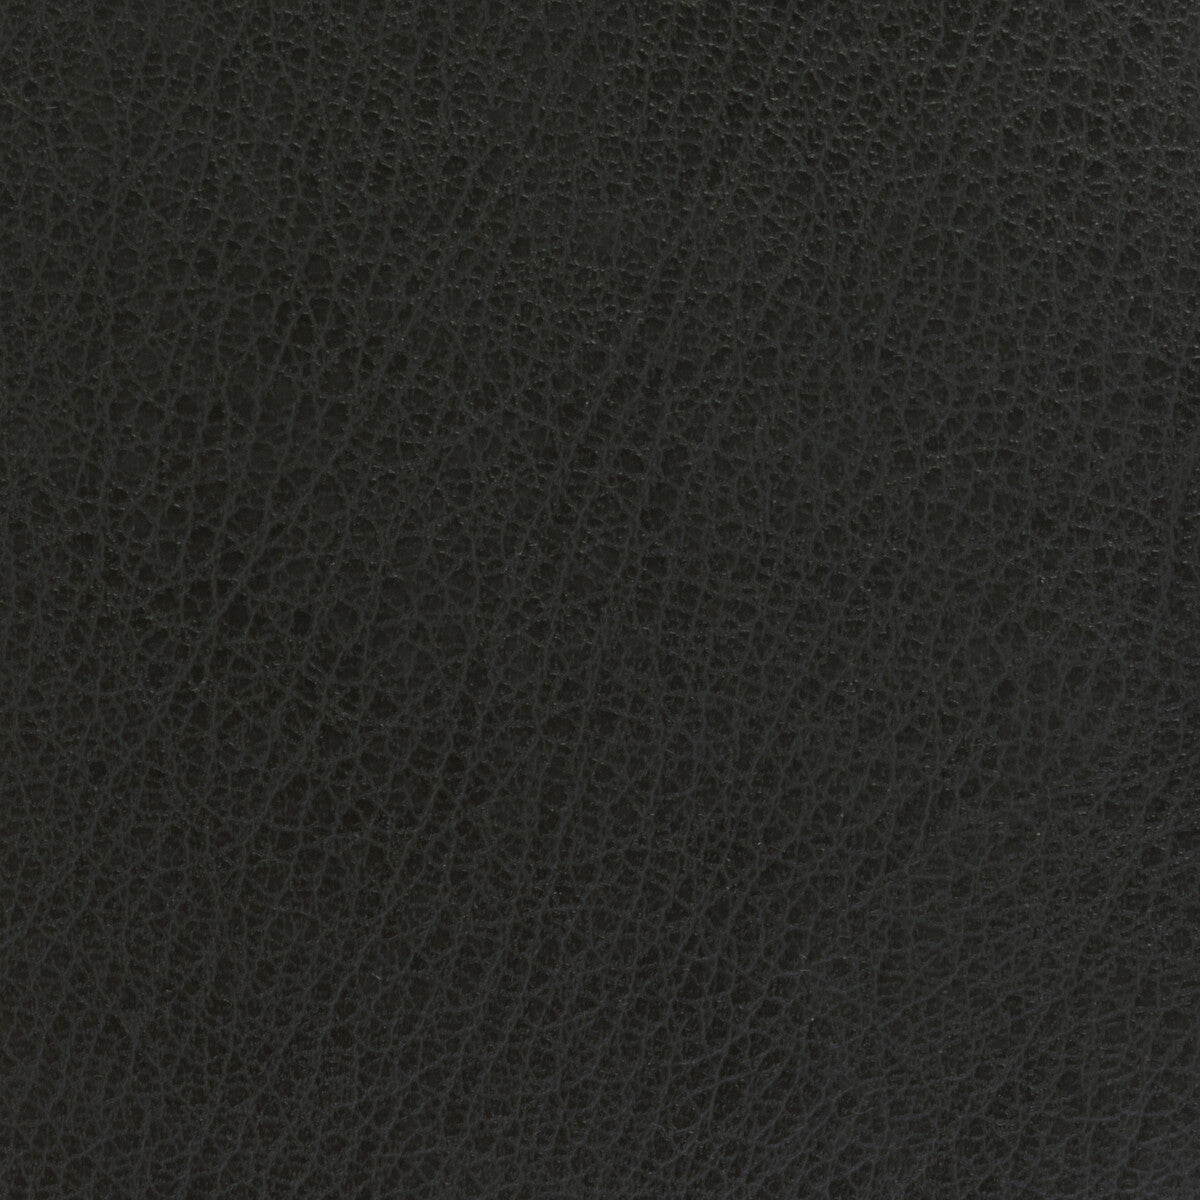 Kravet Basics fabric in celine-21 color - pattern CELINE.21.0 - by Kravet Basics